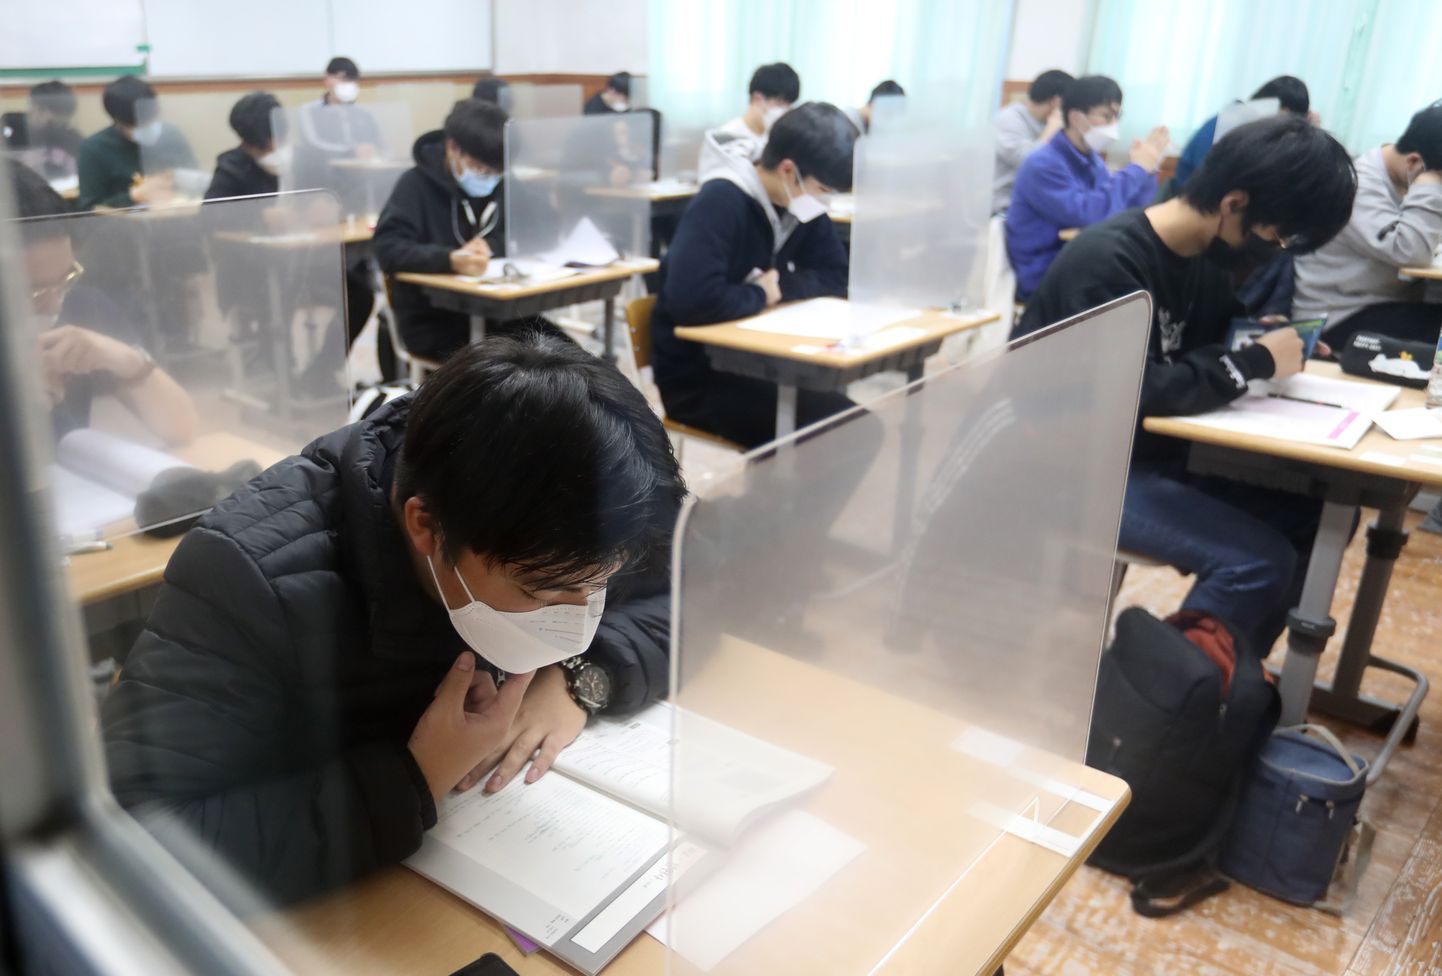 Lõuna-Korea abbituriendid on valmis alustama kogu päeva kestvat ülikoolide sisseastumiseksamit.